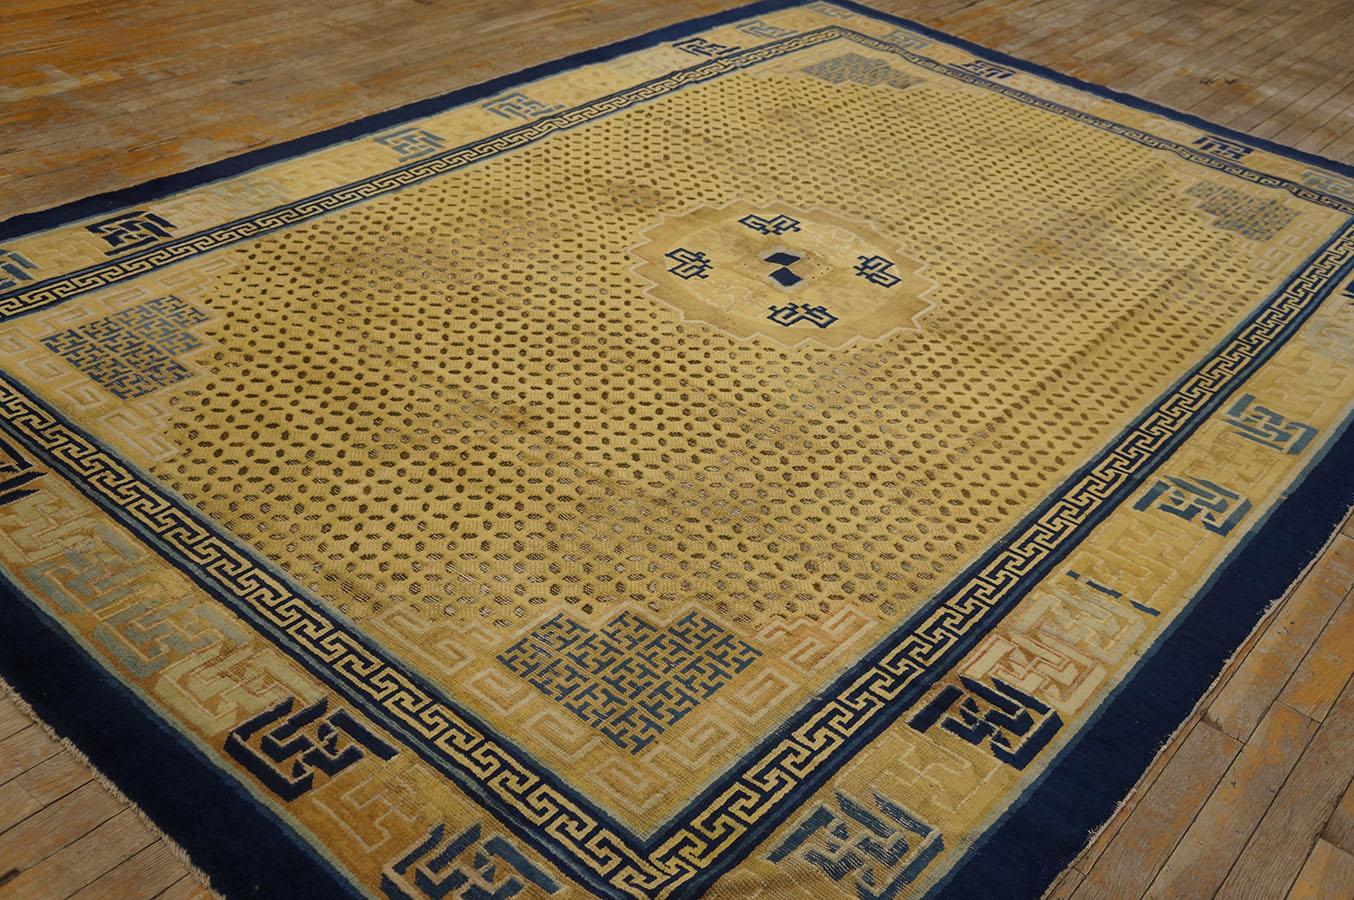 3. Quartal des 18. Jahrhunderts Chinesischer Ningxia Teppich mit Reiskorn-Muster 
( 7' x 10' 2'' - 213 x 309 cm)